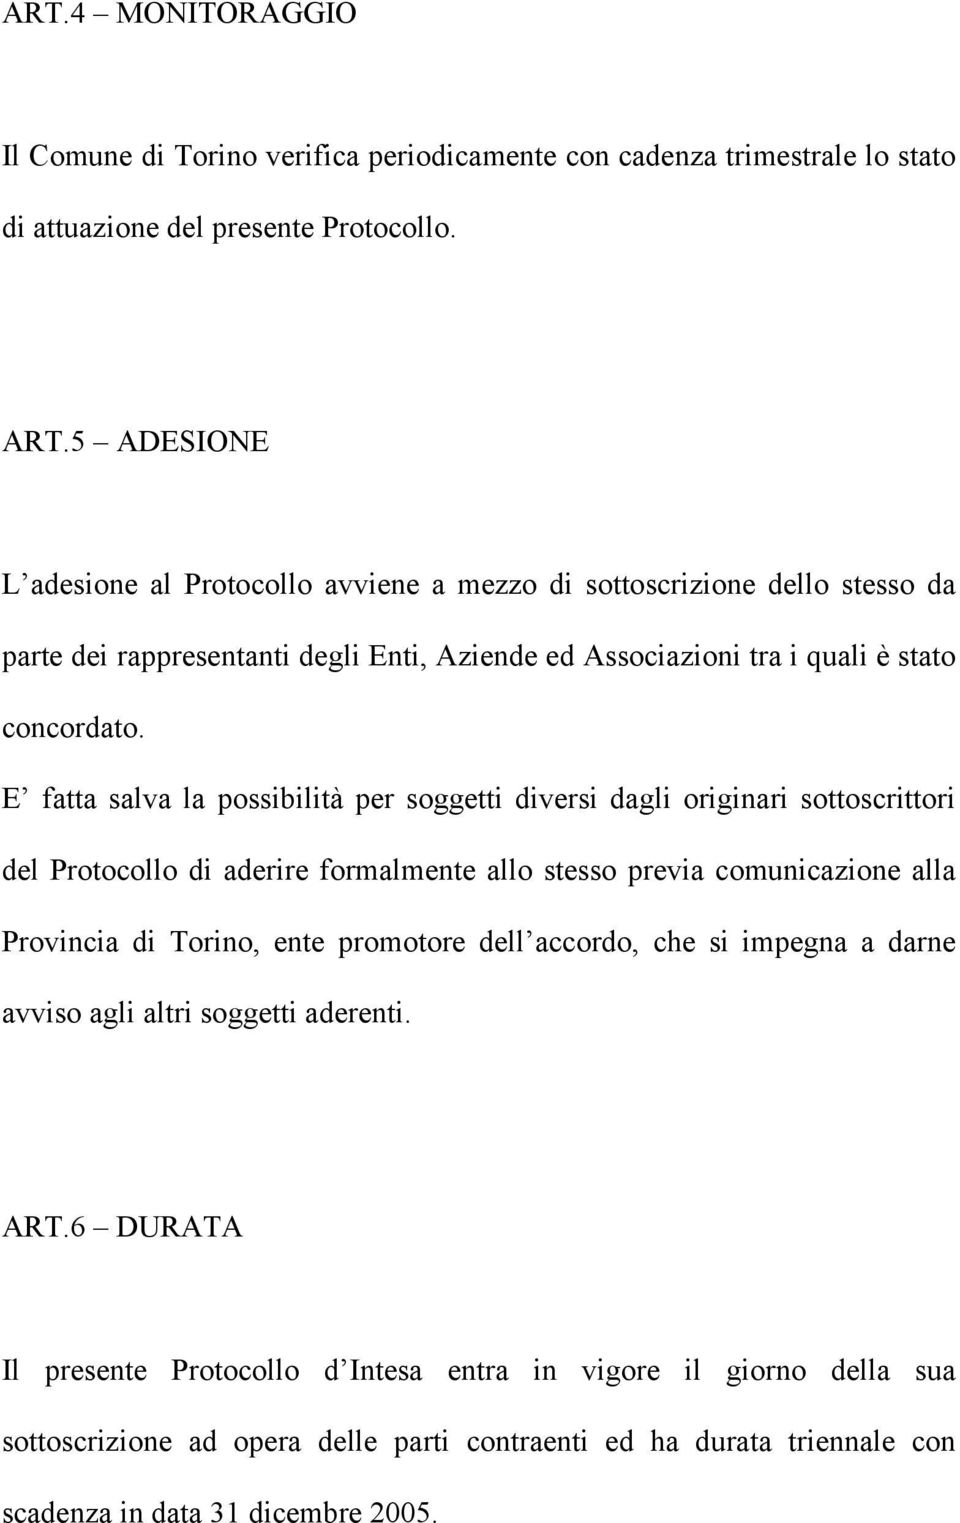 E fatta salva la possibilità per soggetti diversi dagli originari sottoscrittori del Protocollo di aderire formalmente allo stesso previa comunicazione alla Provincia di Torino, ente promotore